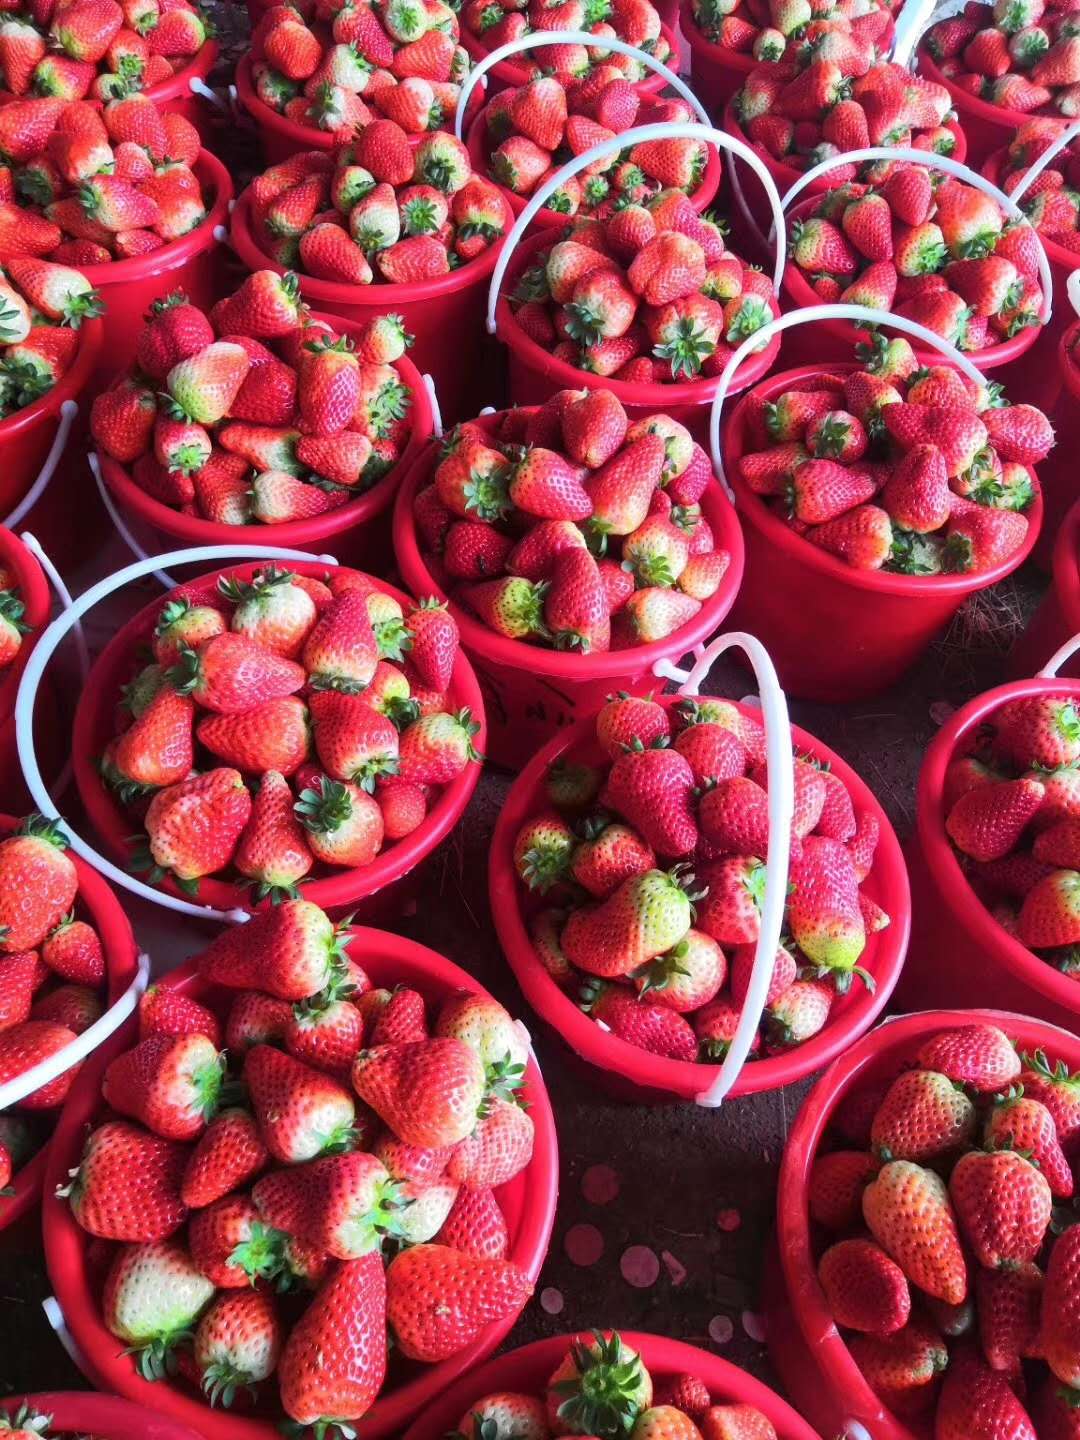 小白草莓苗亩产量高、牛奶草莓苗一亩苗价格